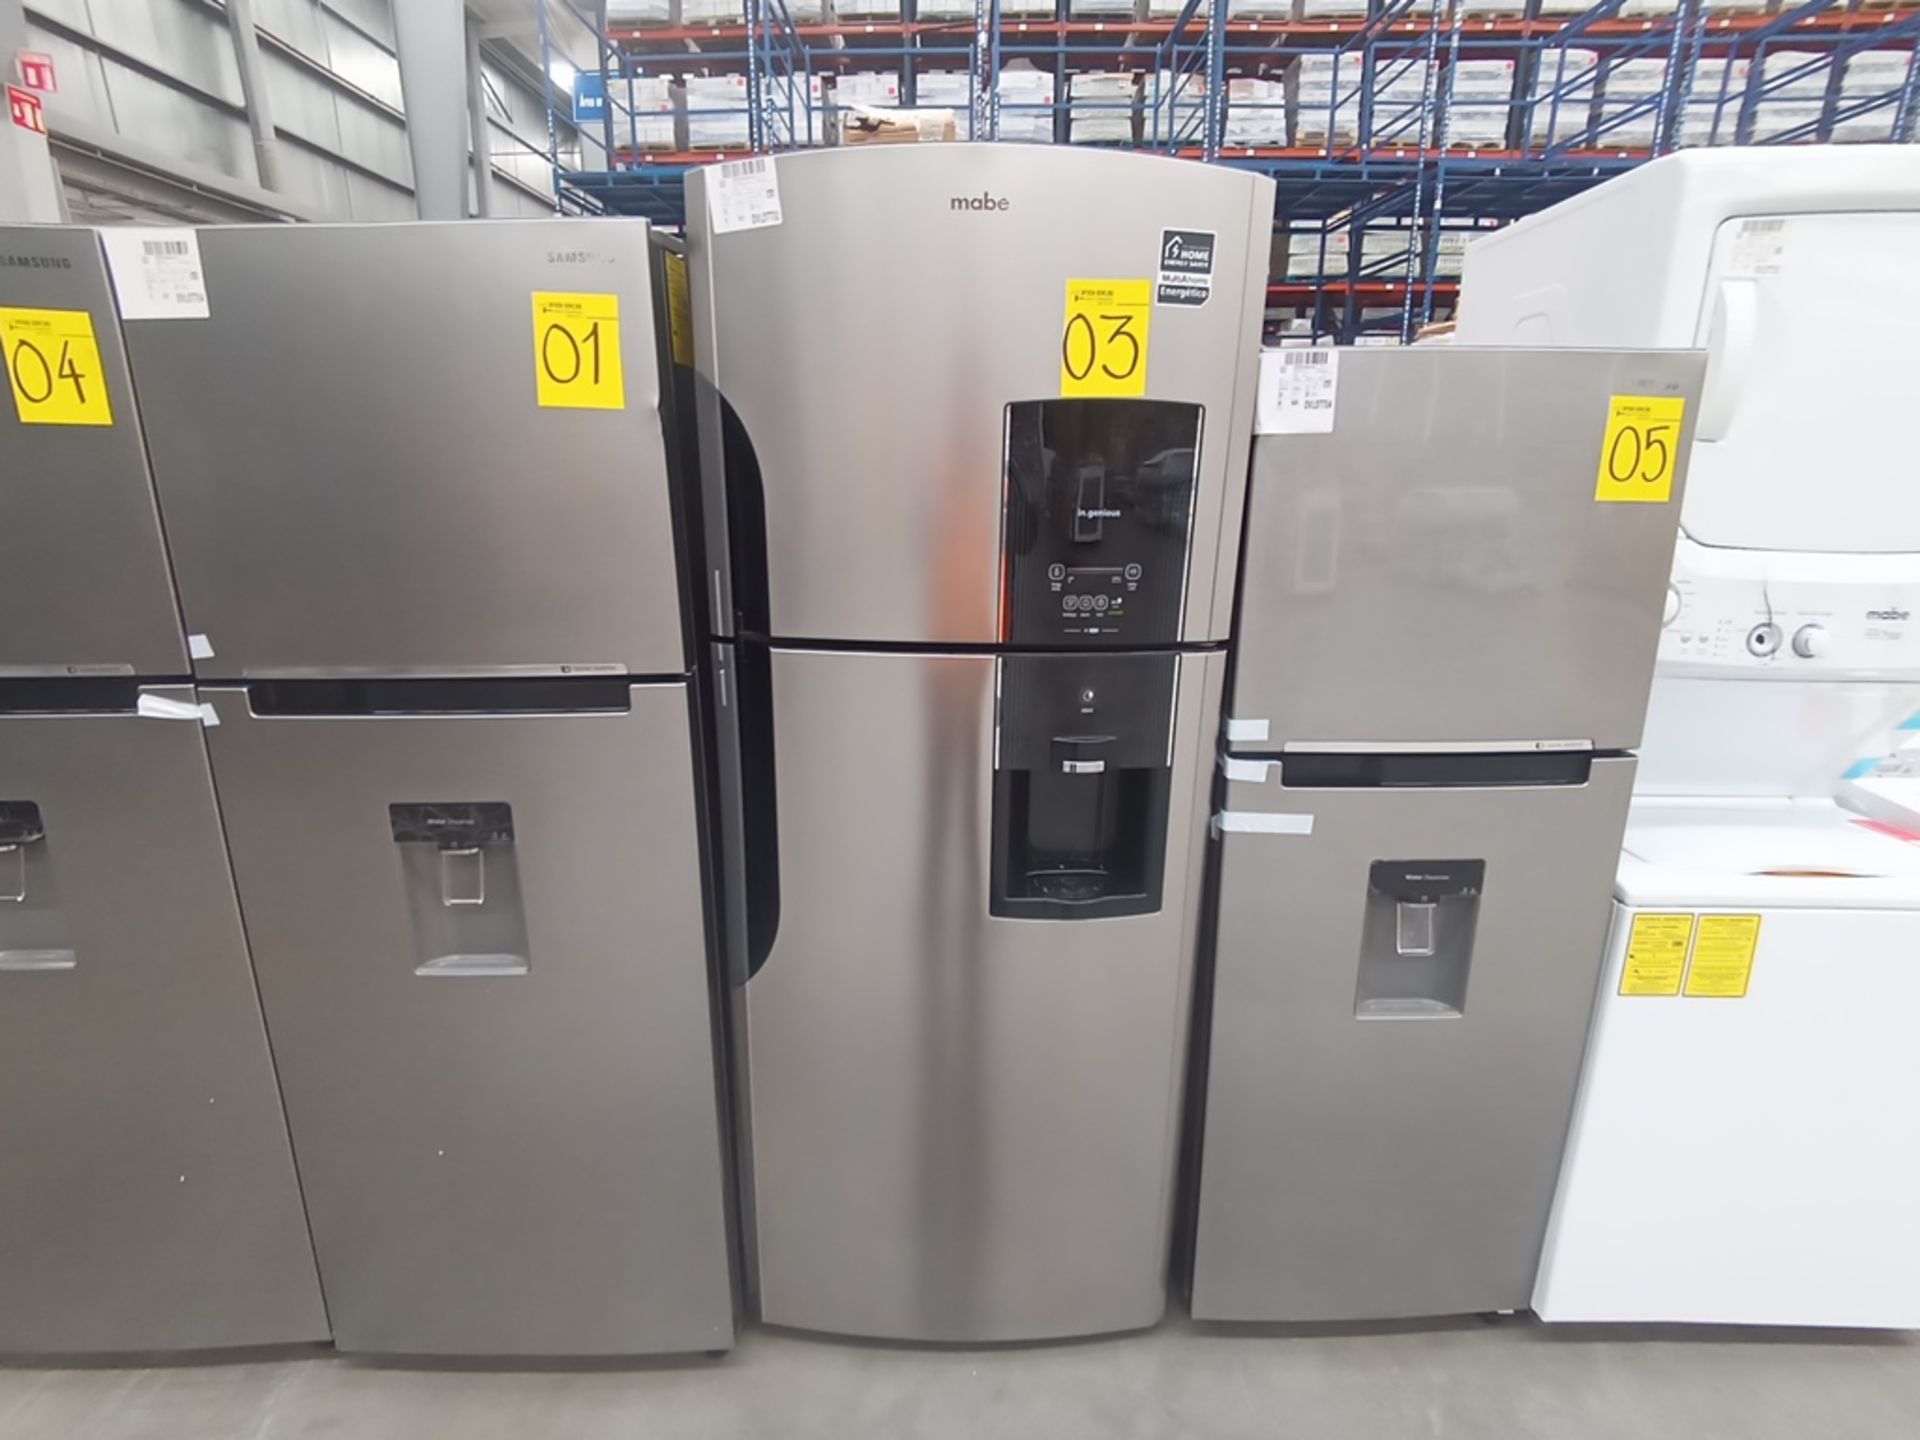 1 Refrigerador Marca Mabe, Modelo RMS6510IBMRXA, Serie 2201B408657, Color Gris, Golpeado, Favor de - Image 4 of 10